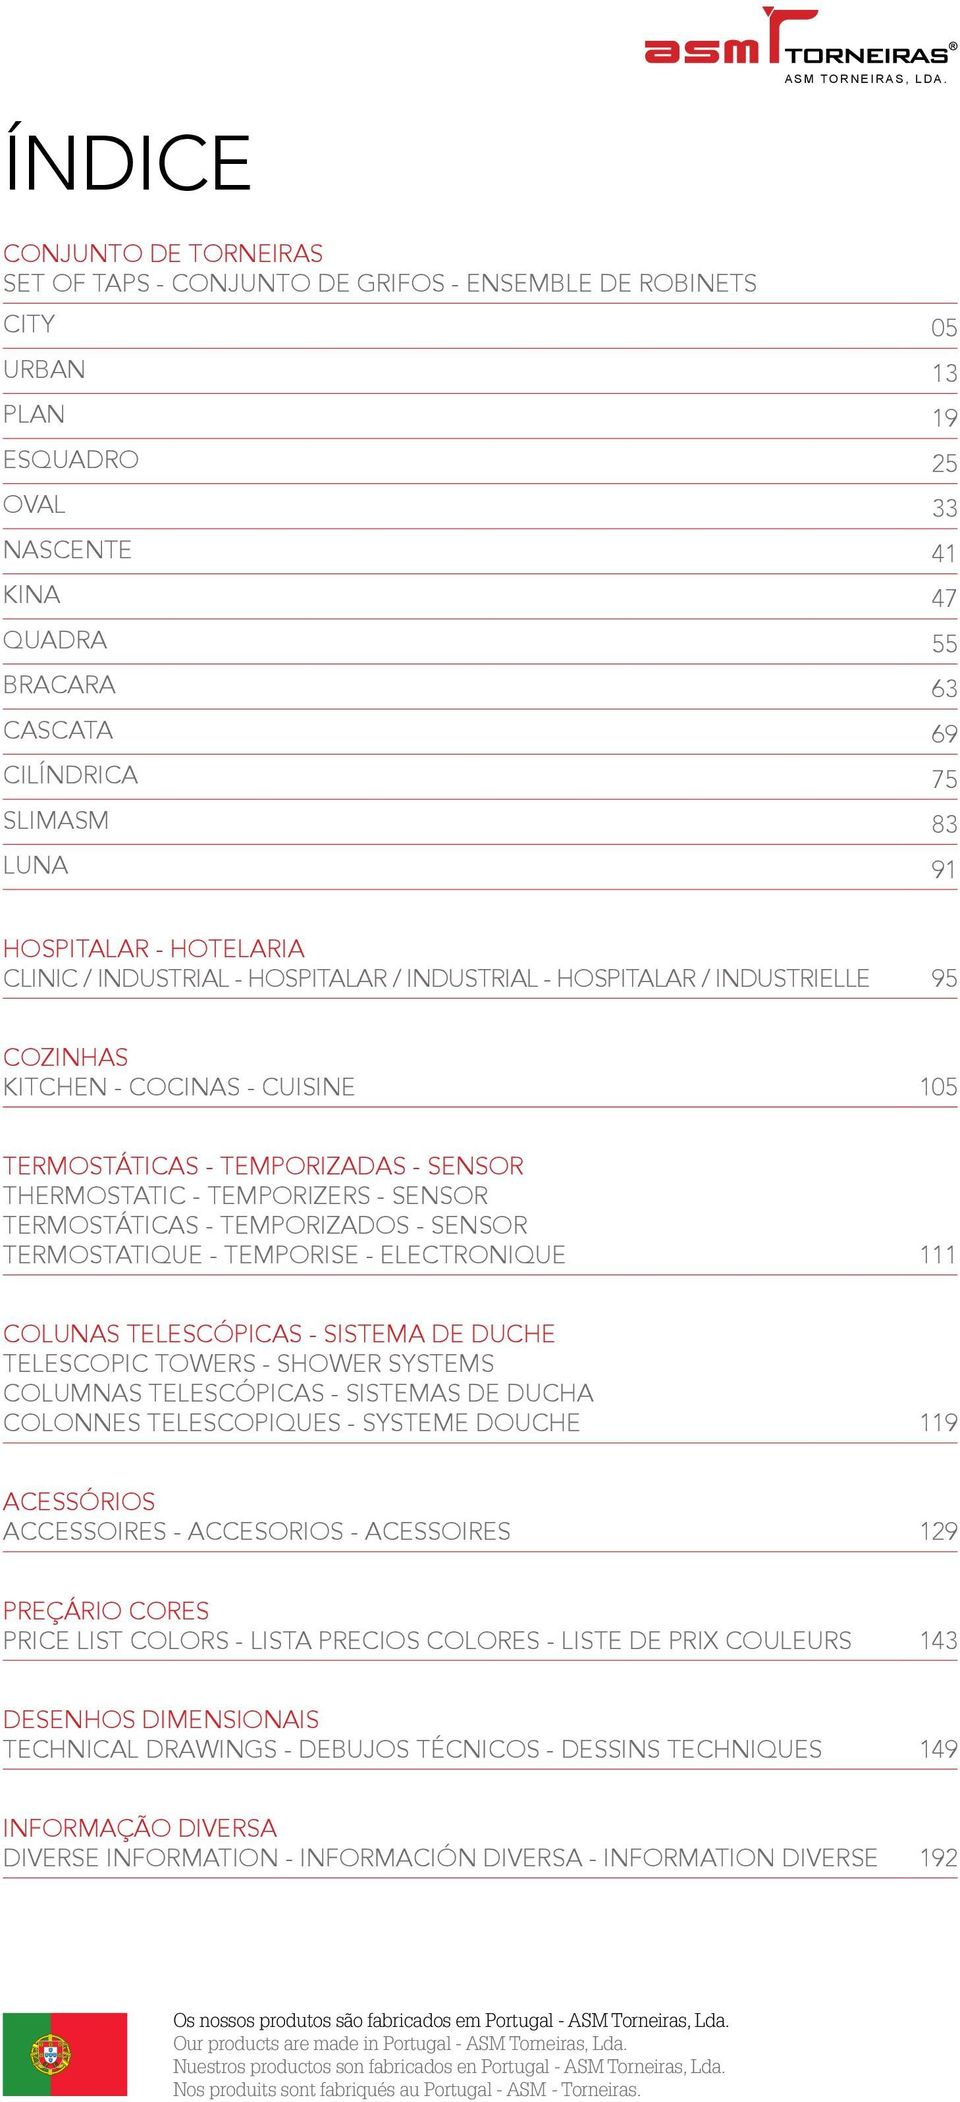 SLIMASM 83 LUNA 91 HOSPITALAR - HOTELARIA CLINIC / INDUSTRIAL - HOSPITALAR / INDUSTRIAL - HOSPITALAR / INDUSTRIELLE 95 COZINHAS KITCHEN - COCINAS - CUISINE 105 TERMOSTÁTICAS - TEMPORIZADAS - SENSOR